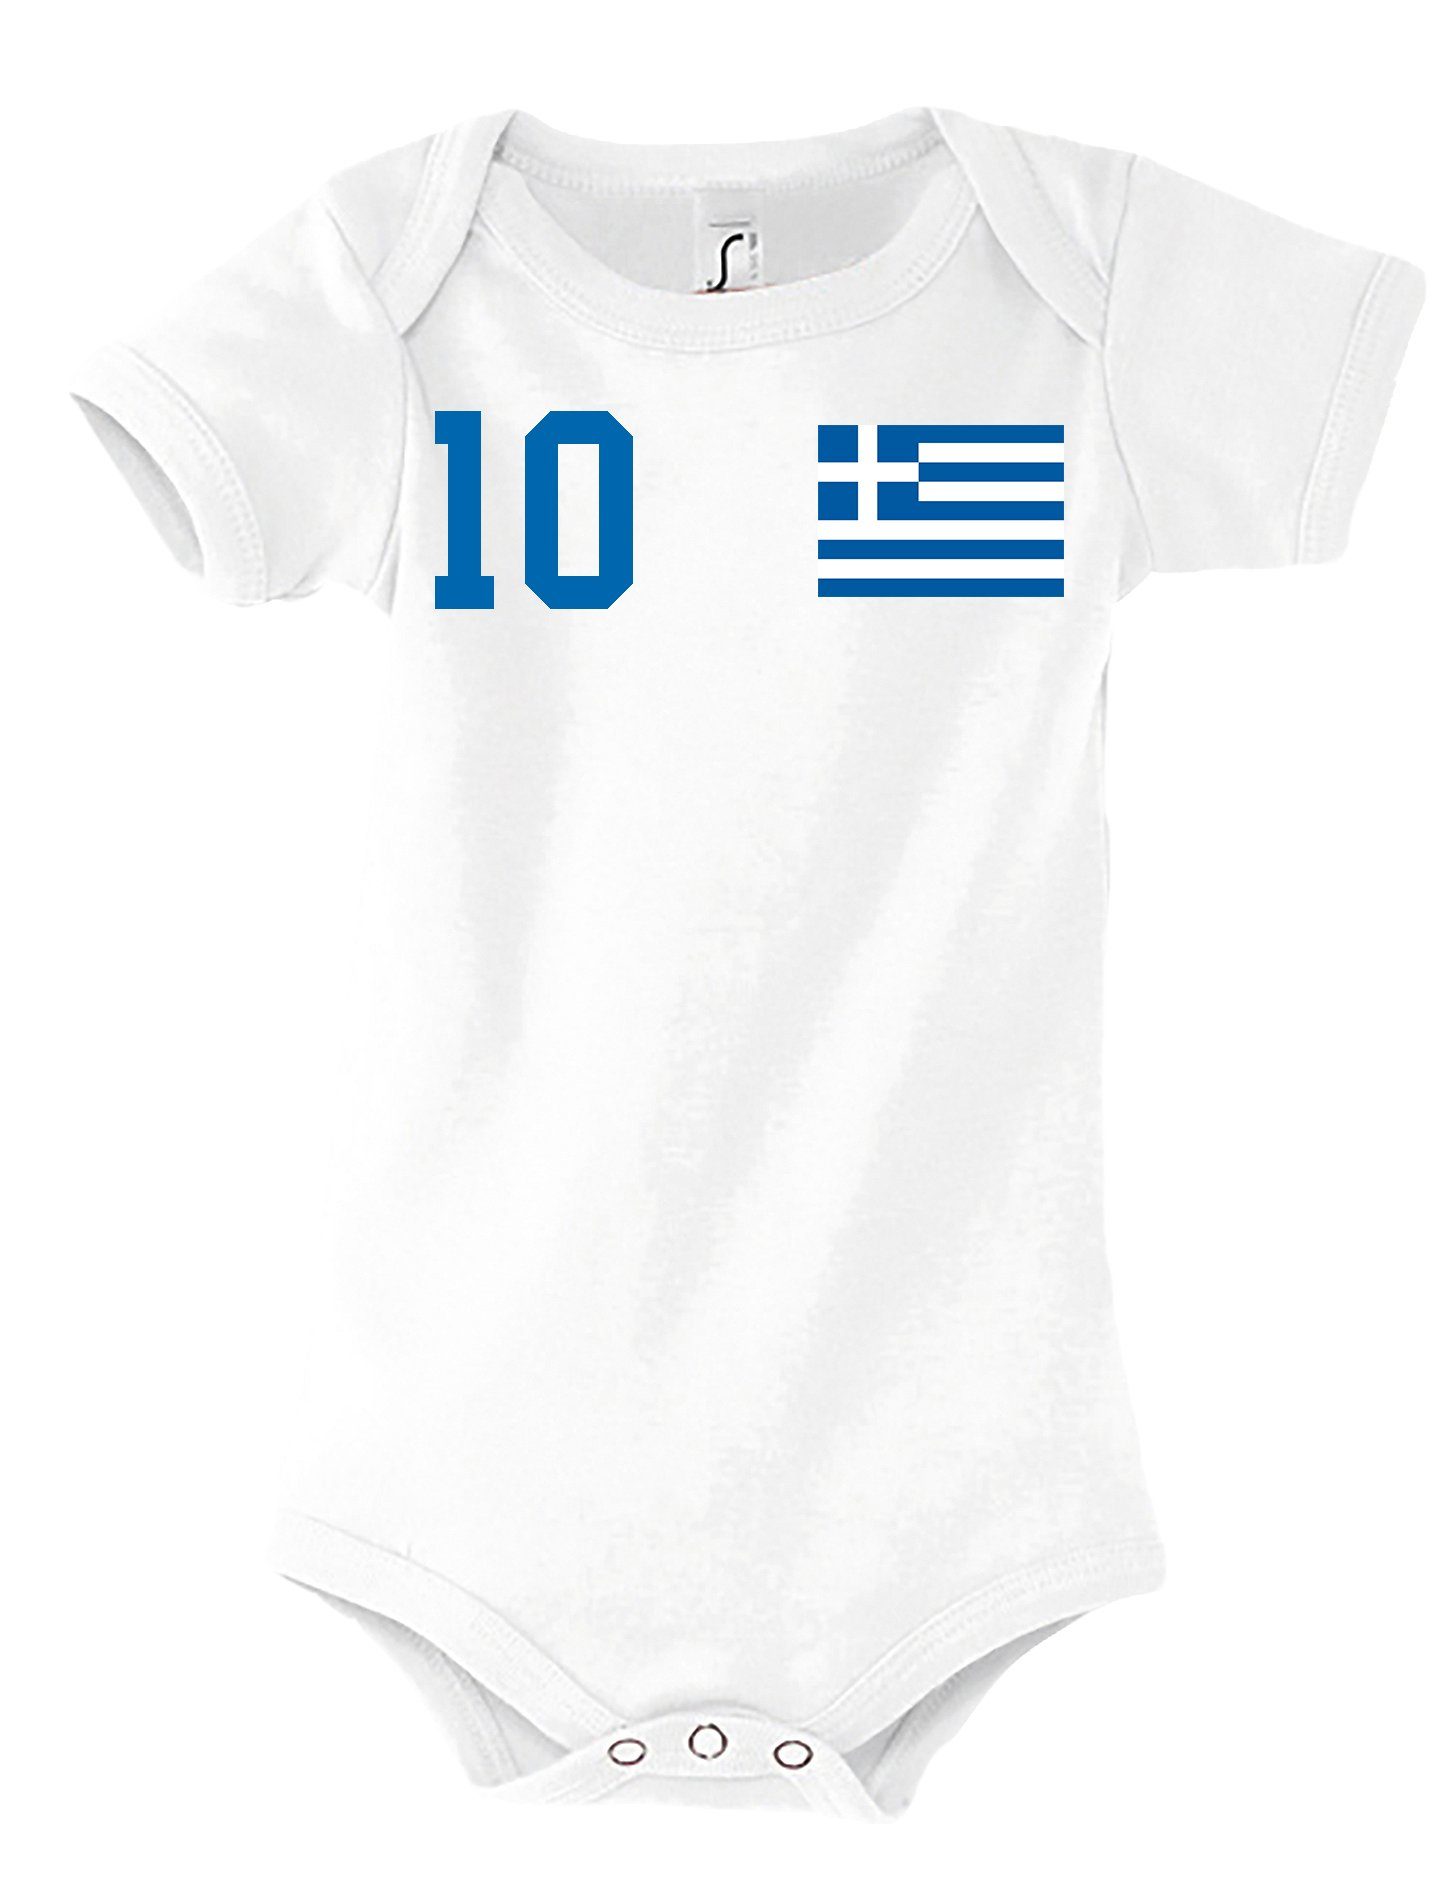 Youth Designz Kurzarmbody Griechenland Kinder Baby Body Strampler mit trendigem Motiv Weiß